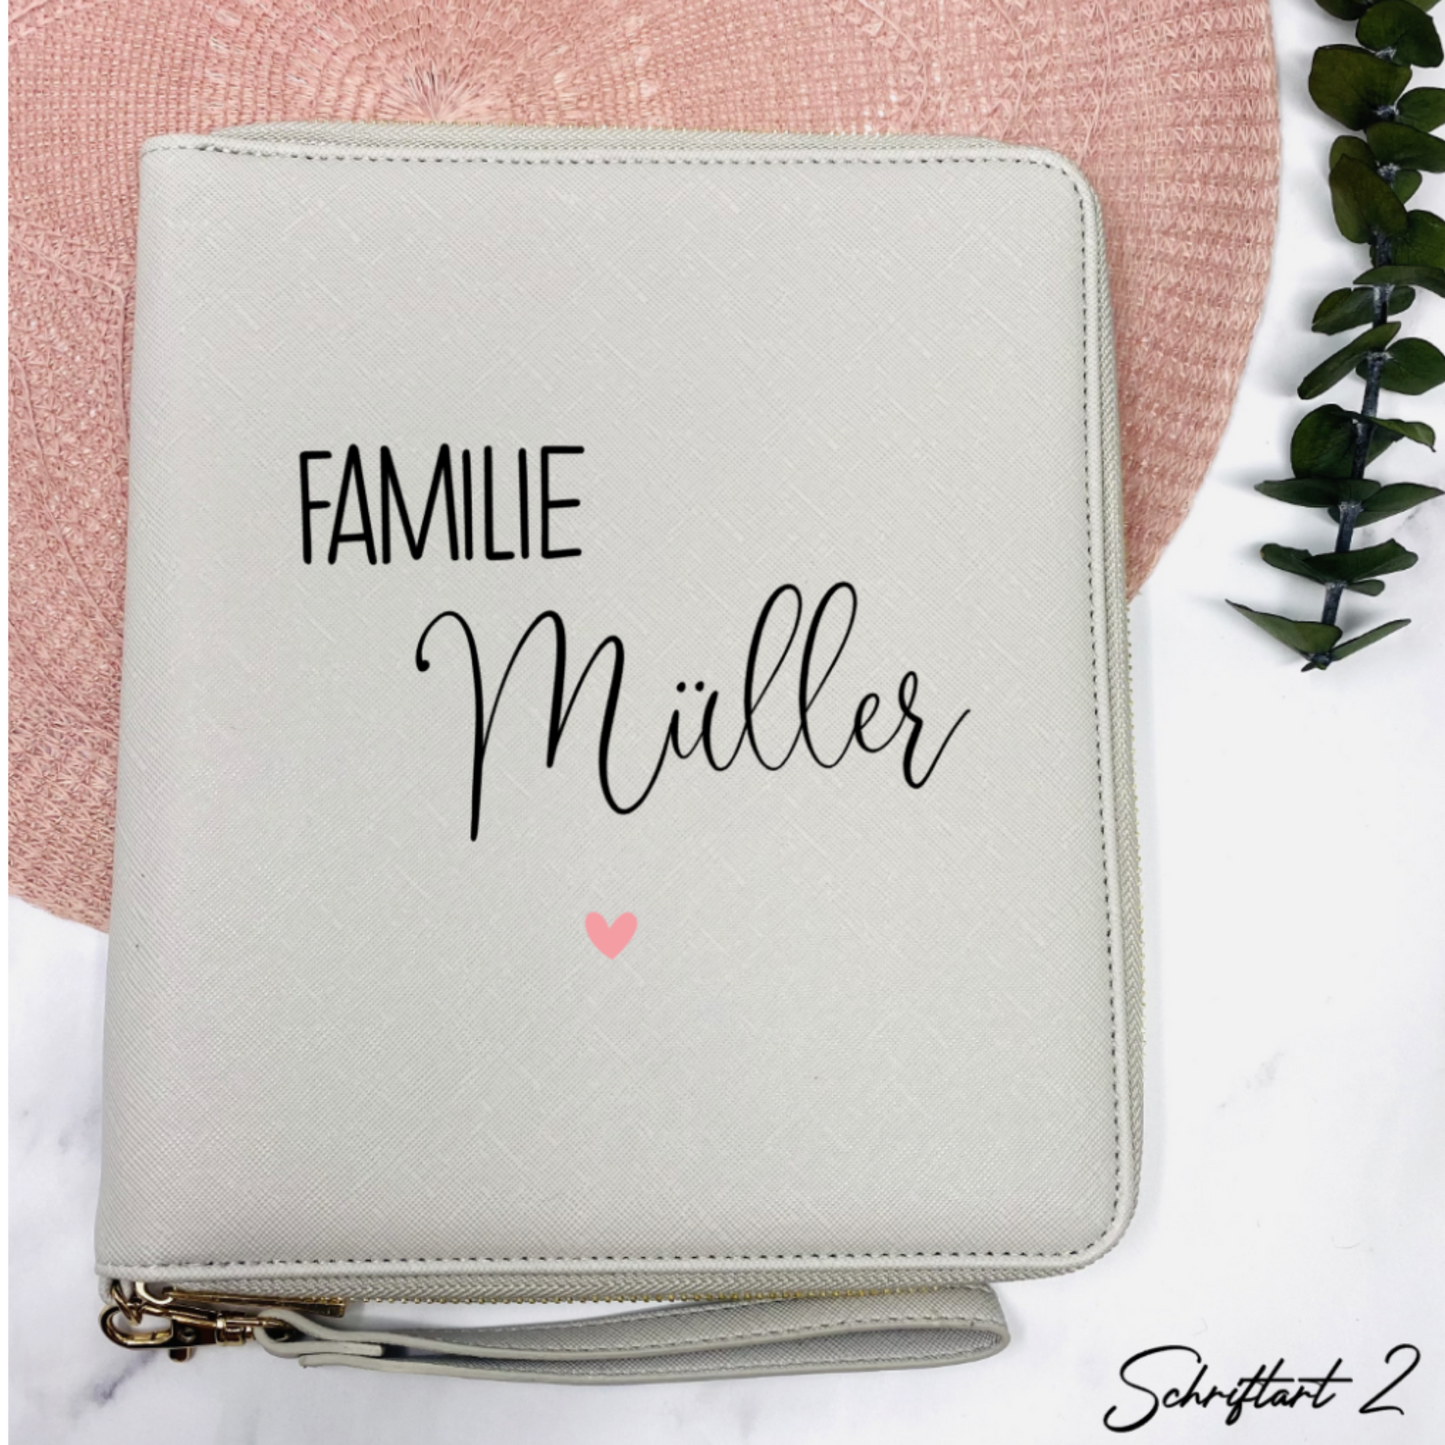 Familien Organizer in grau personalisiert mit Familie und Name - Geschenkidee für Familie, U-heft, Impfpass - für Unterlagen und mehr